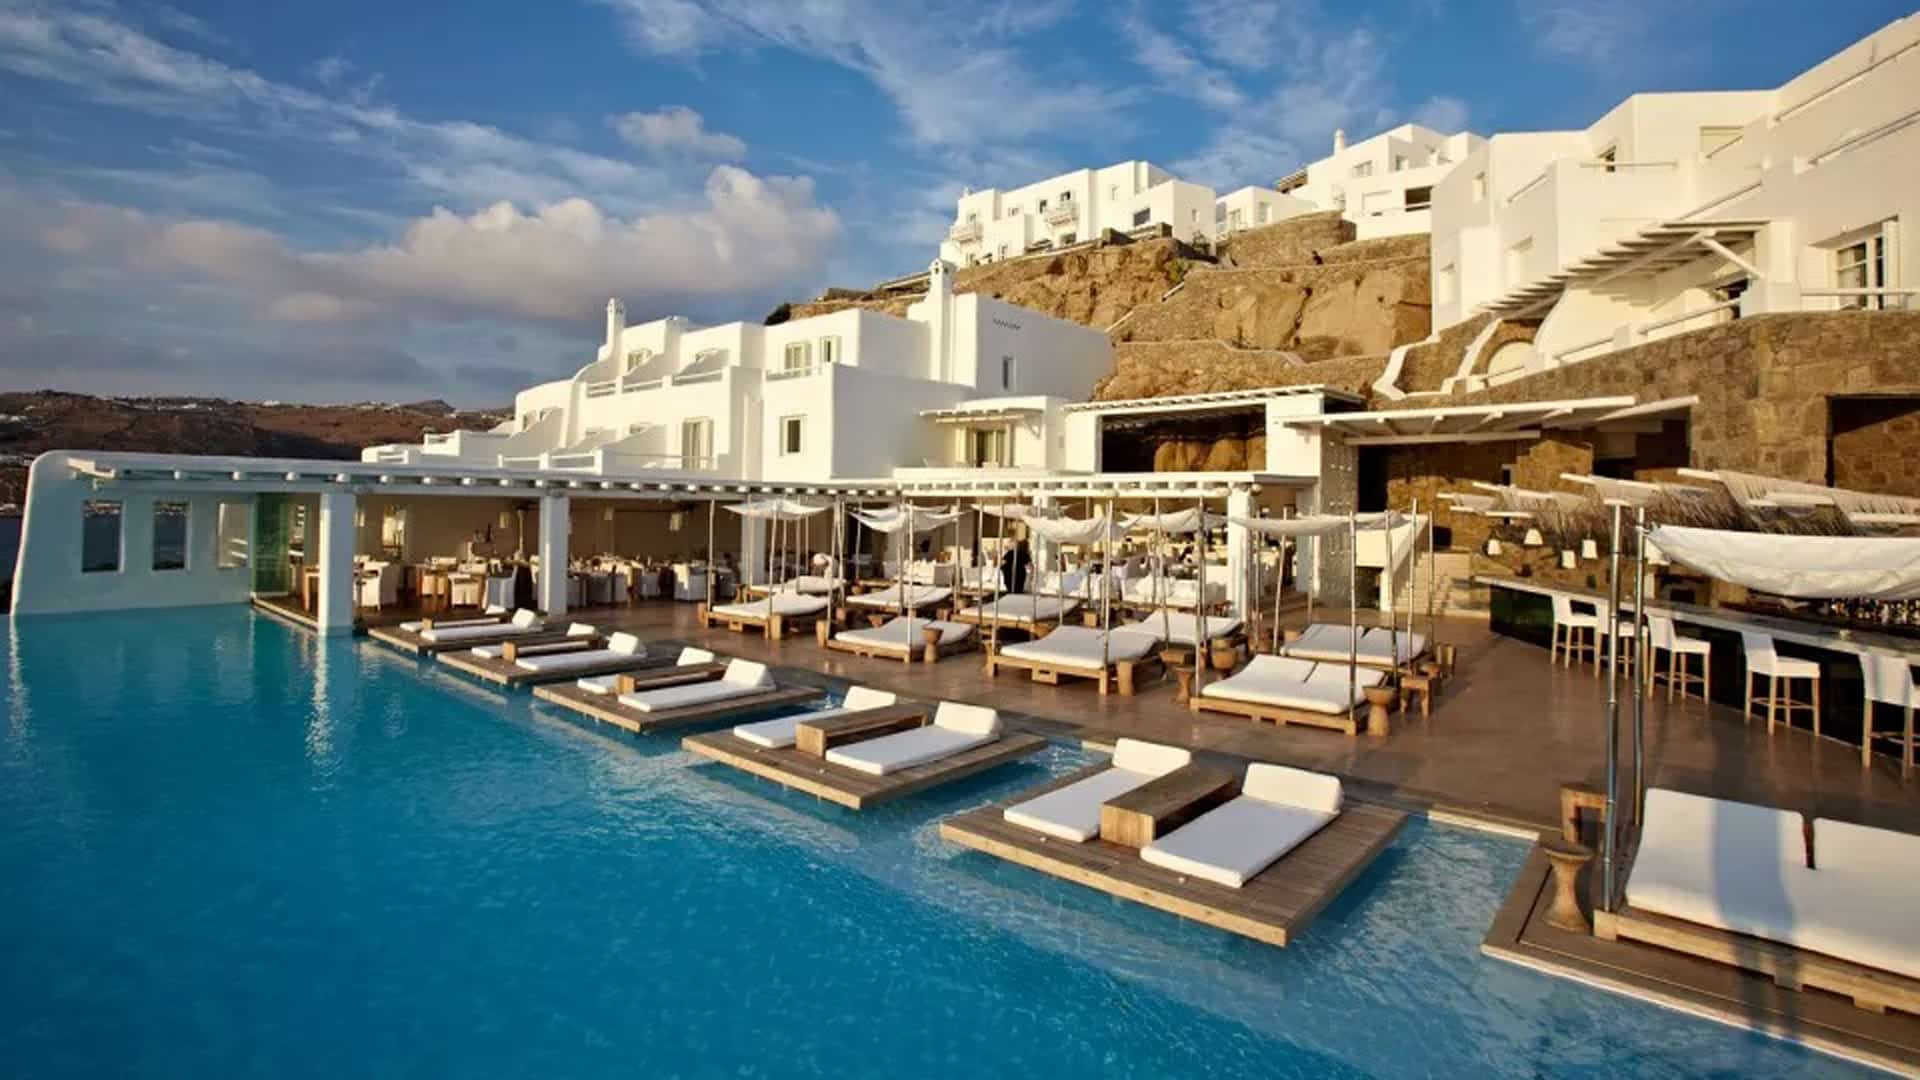 Cavo Tagoo 5* - це унікальний готель, побудований на мальовничій скелі, яка височіє над смарагдовою гладдю Егейського моря.